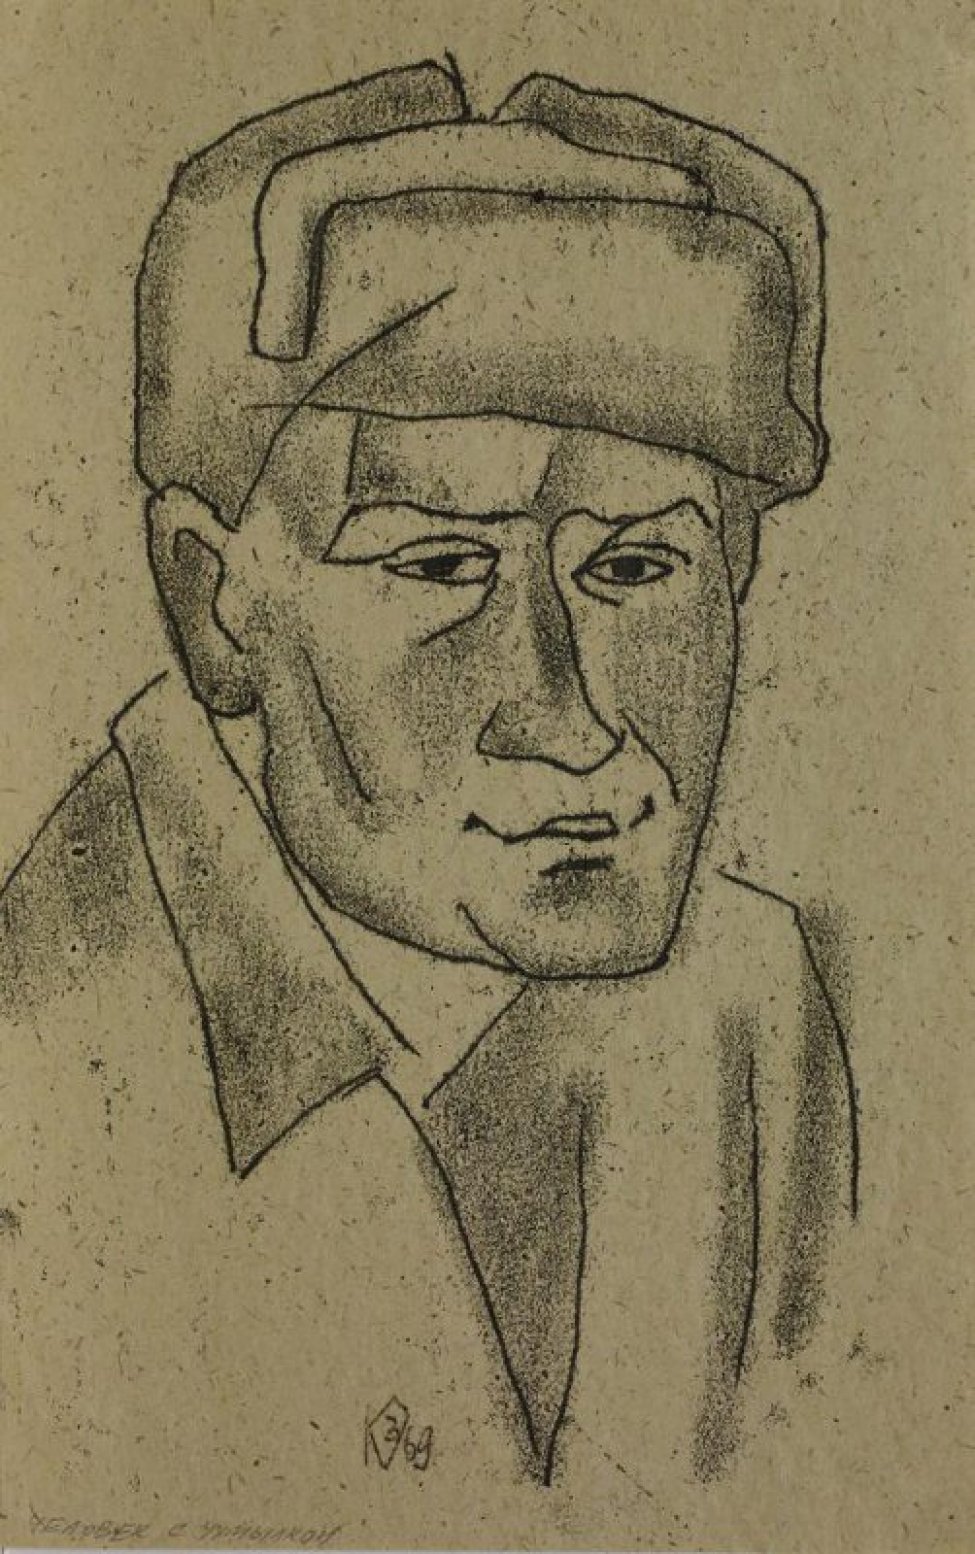 Изображен линейно оплечный портрет мужчины с квадратным лицом в шапке-ушанке, в 3/4 повороте вправо.